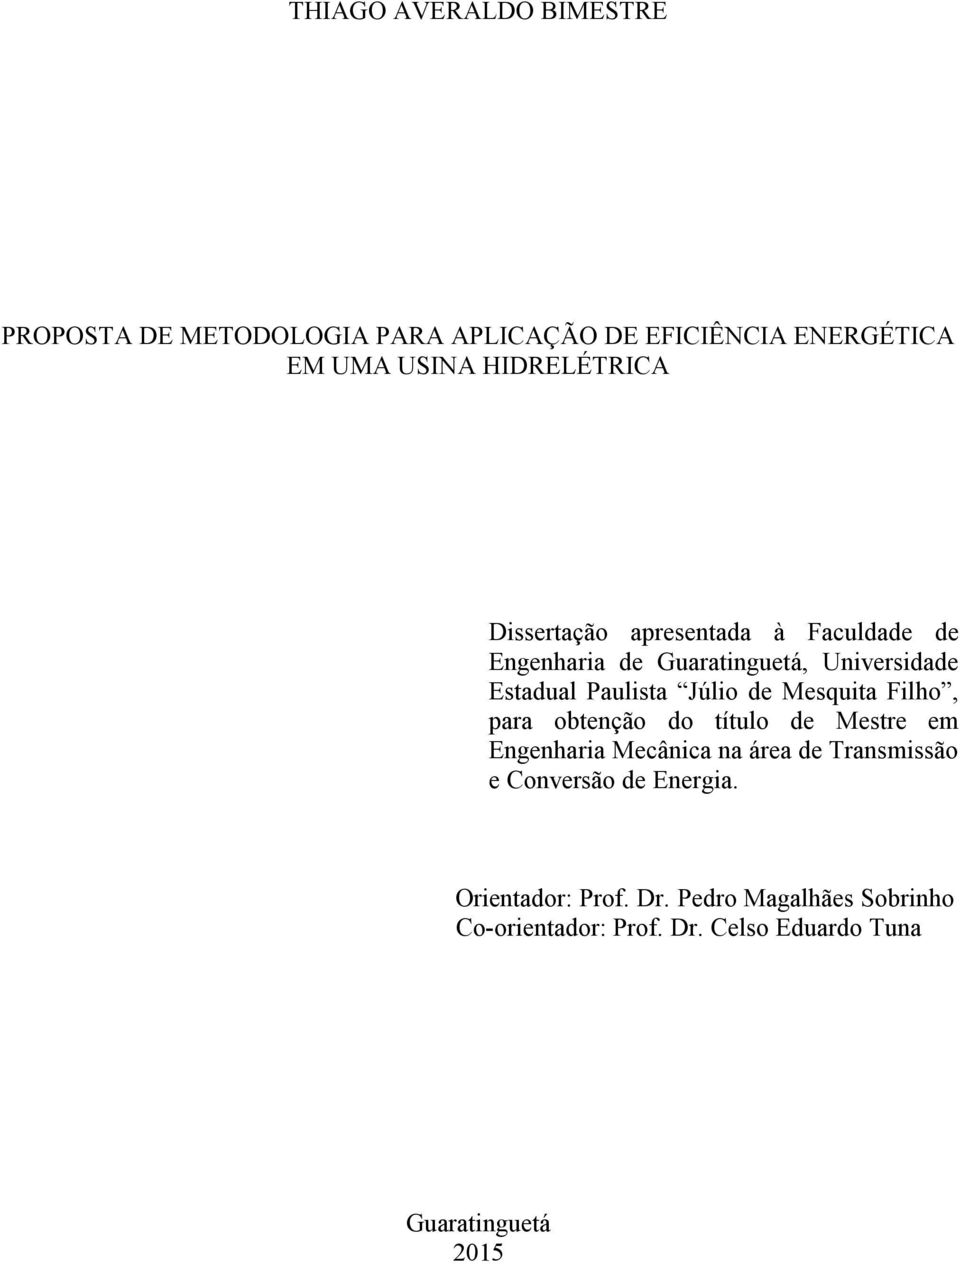 Júlio de Mesquita Filho, para obtenção do título de Mestre em Engenharia Mecânica na área de Transmissão e